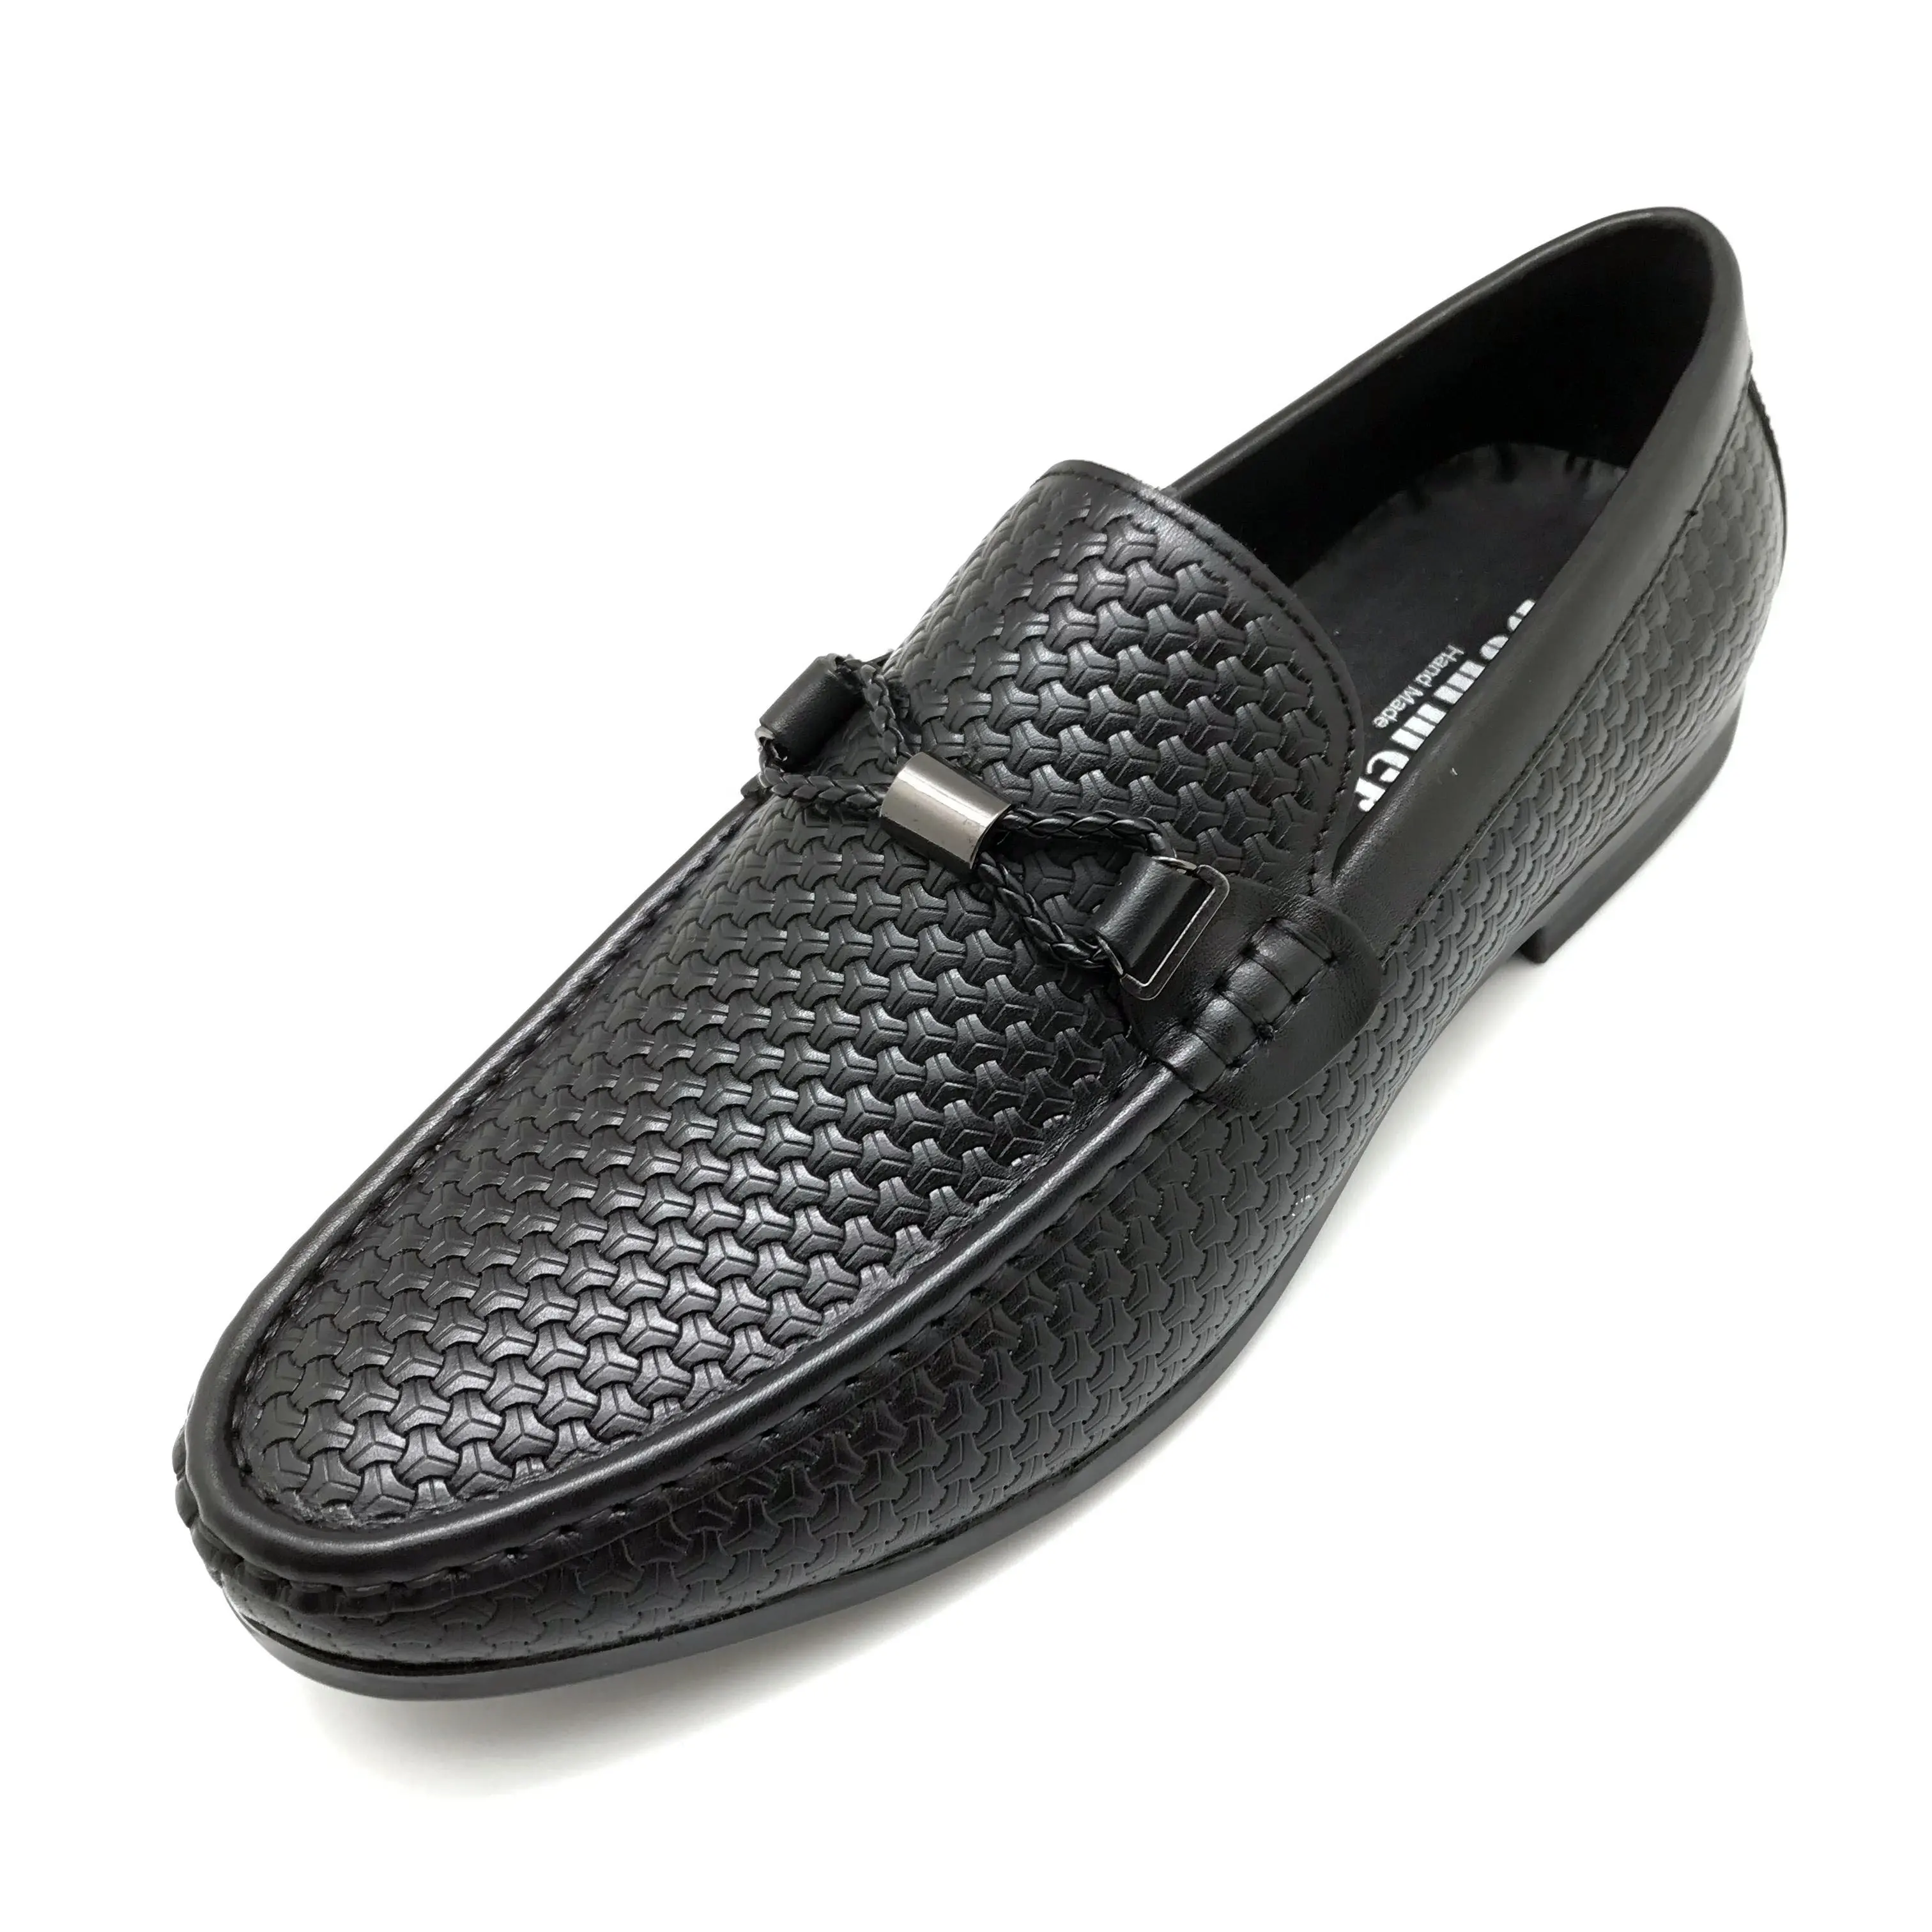 ผู้ชายแฟชั่นCasual Tasselsสไตล์อังกฤษสีดำอย่างเป็นทางการขับรถDressingธุรกิจรองเท้ารองเท้าแต่งงานรองเท้า